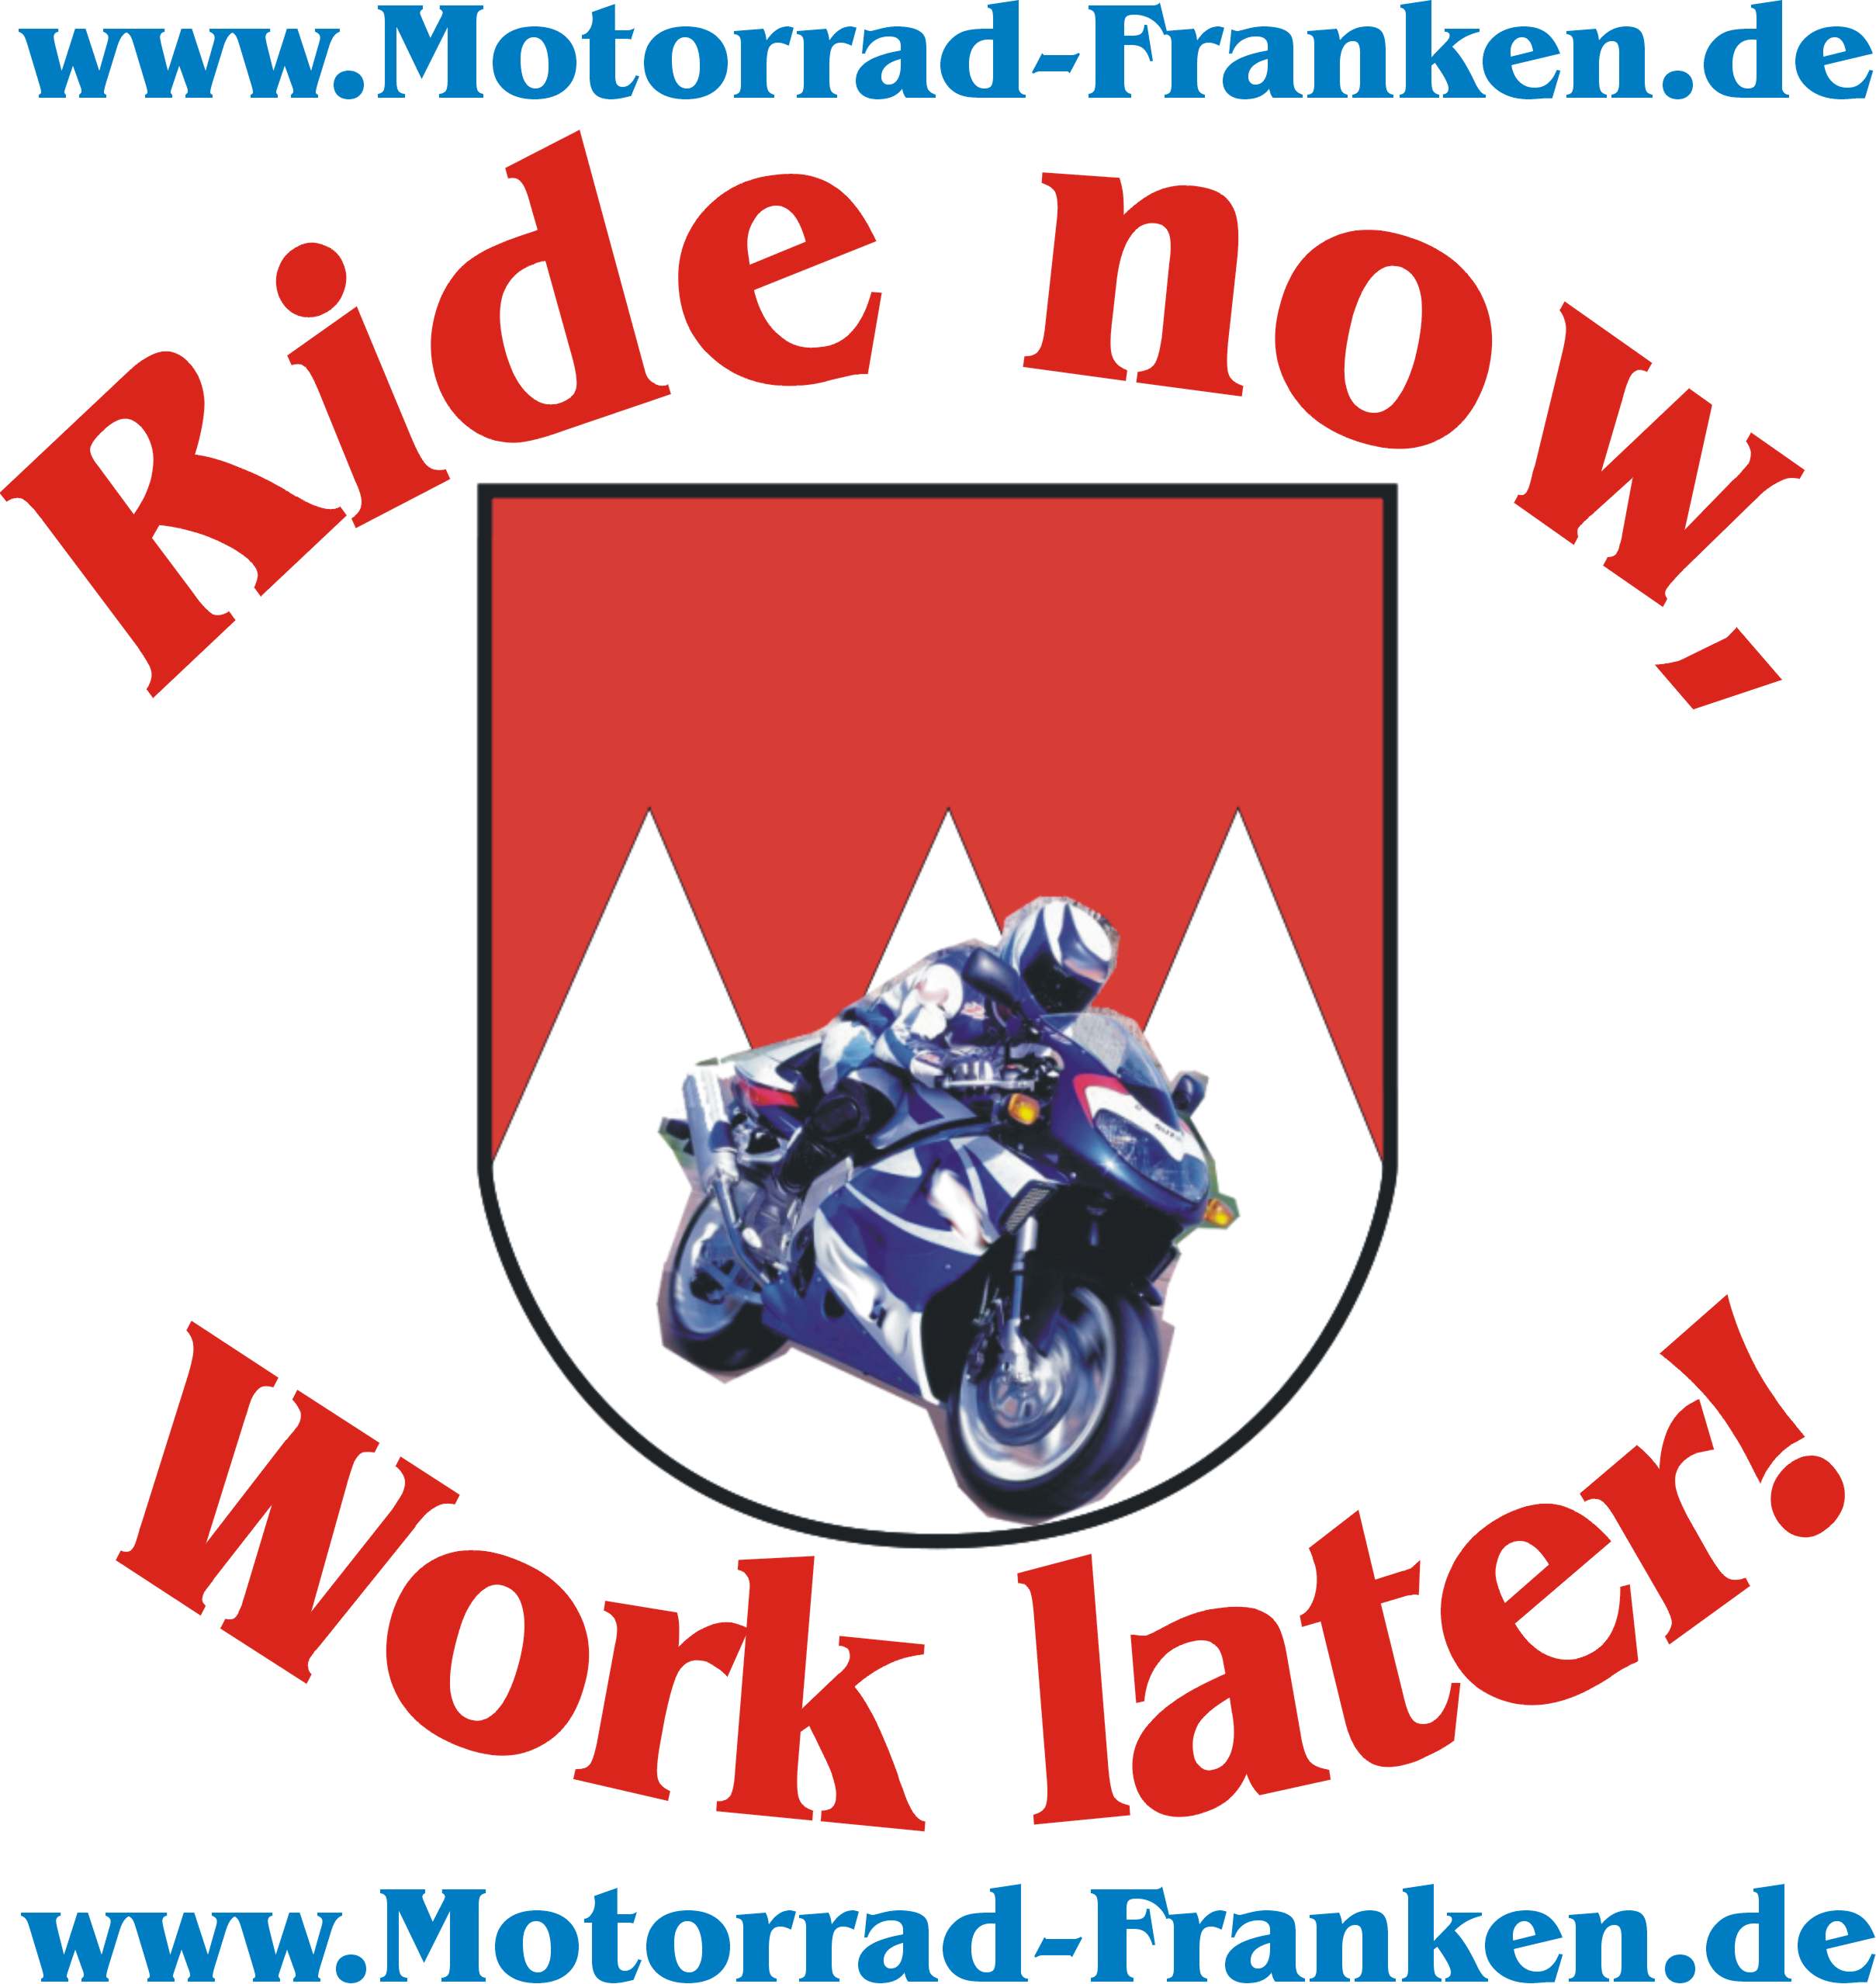 www.motorrad-franken.de Ride now - work later